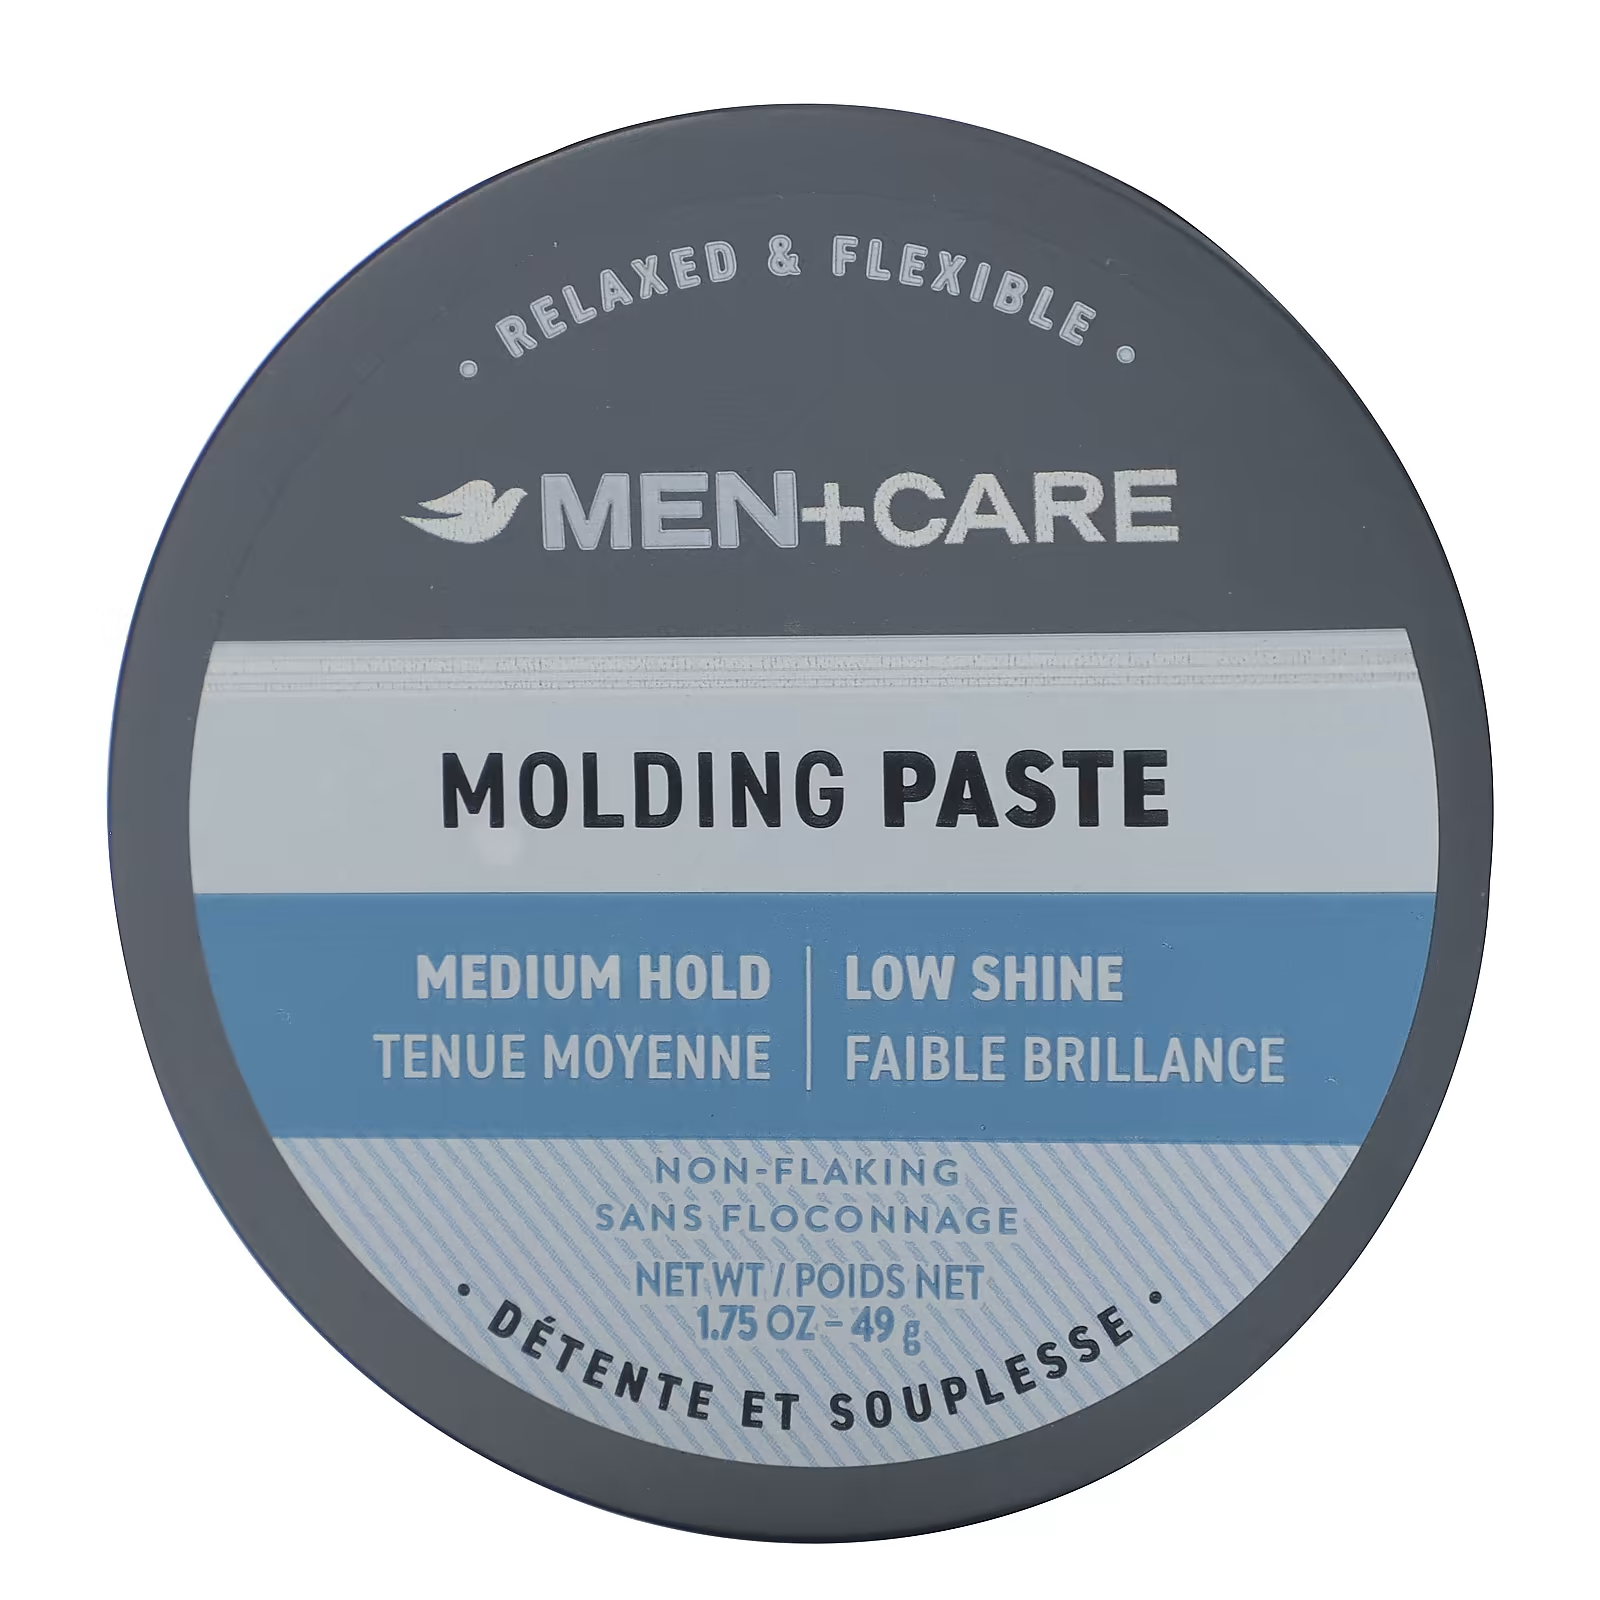 цена Dove Men+Care Molding Paste средней фиксации, слабого блеска, 1,75 унции (49 г)